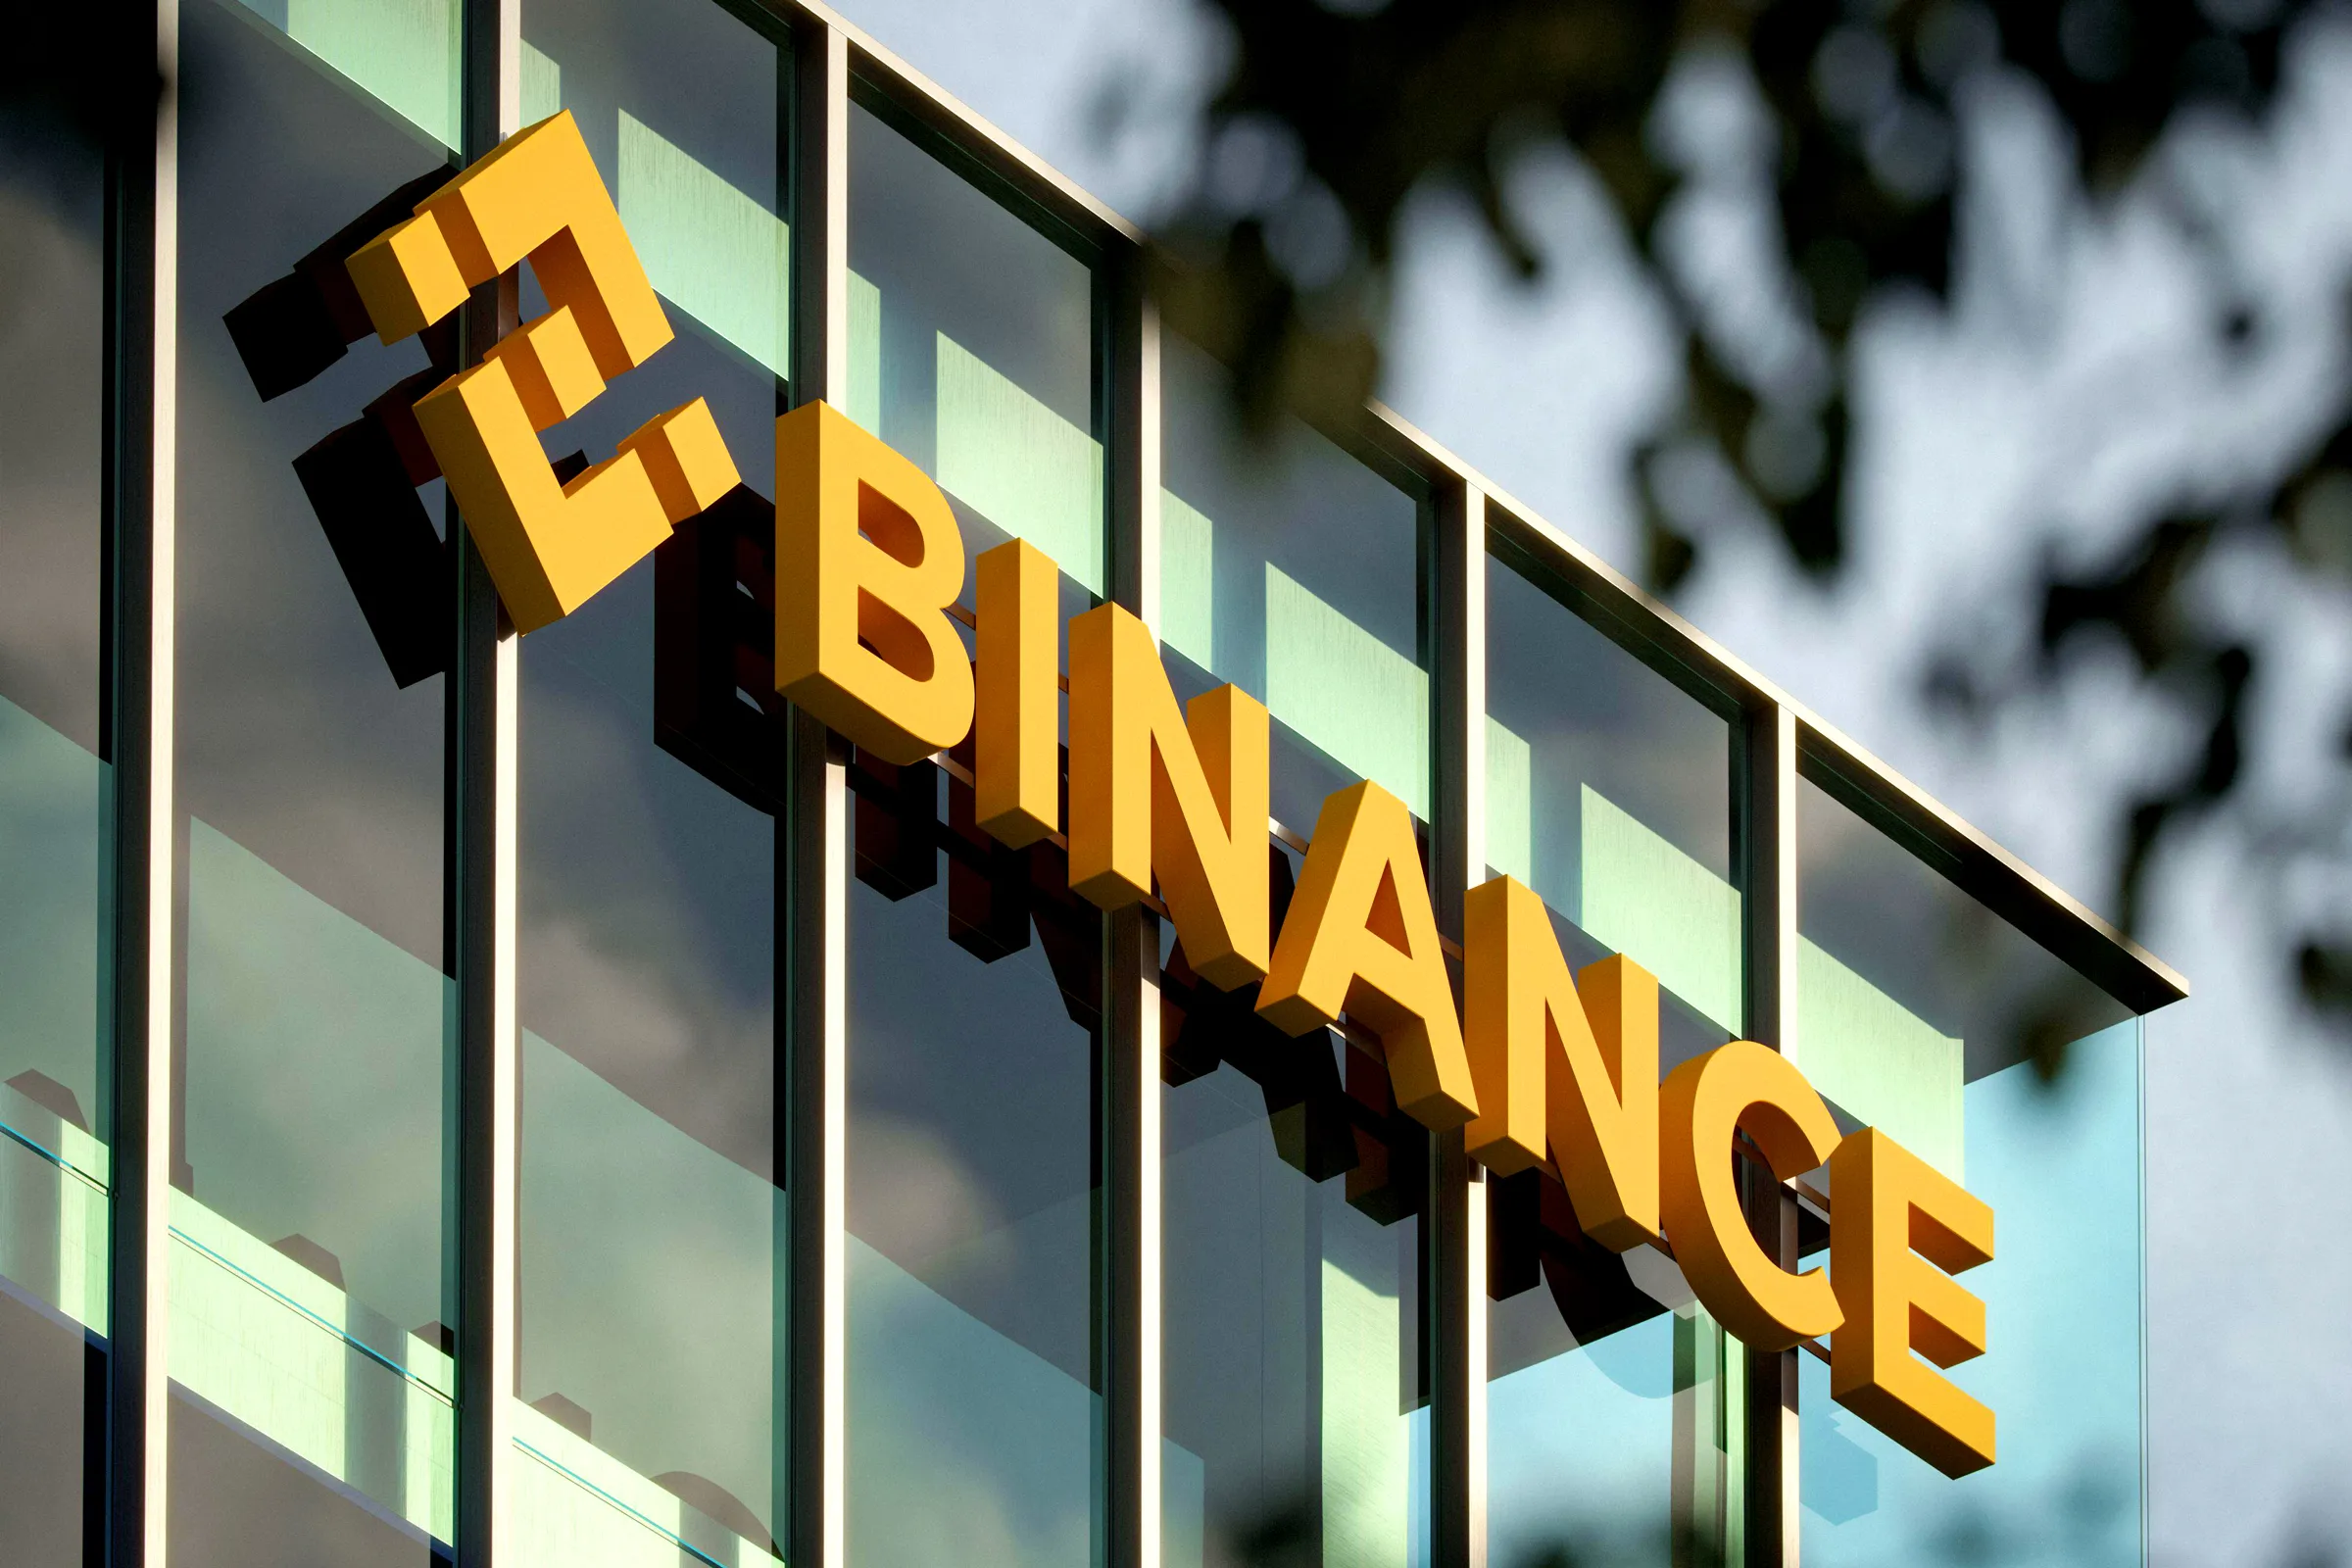 Binance, sàn giao dịch tiền điện tử lớn nhất thế giới, quyết định không theo đuổi việc có giấy phép để quản lý một quỹ đầu tư chung tại Abu Dhabi, theo một bản báo cáo